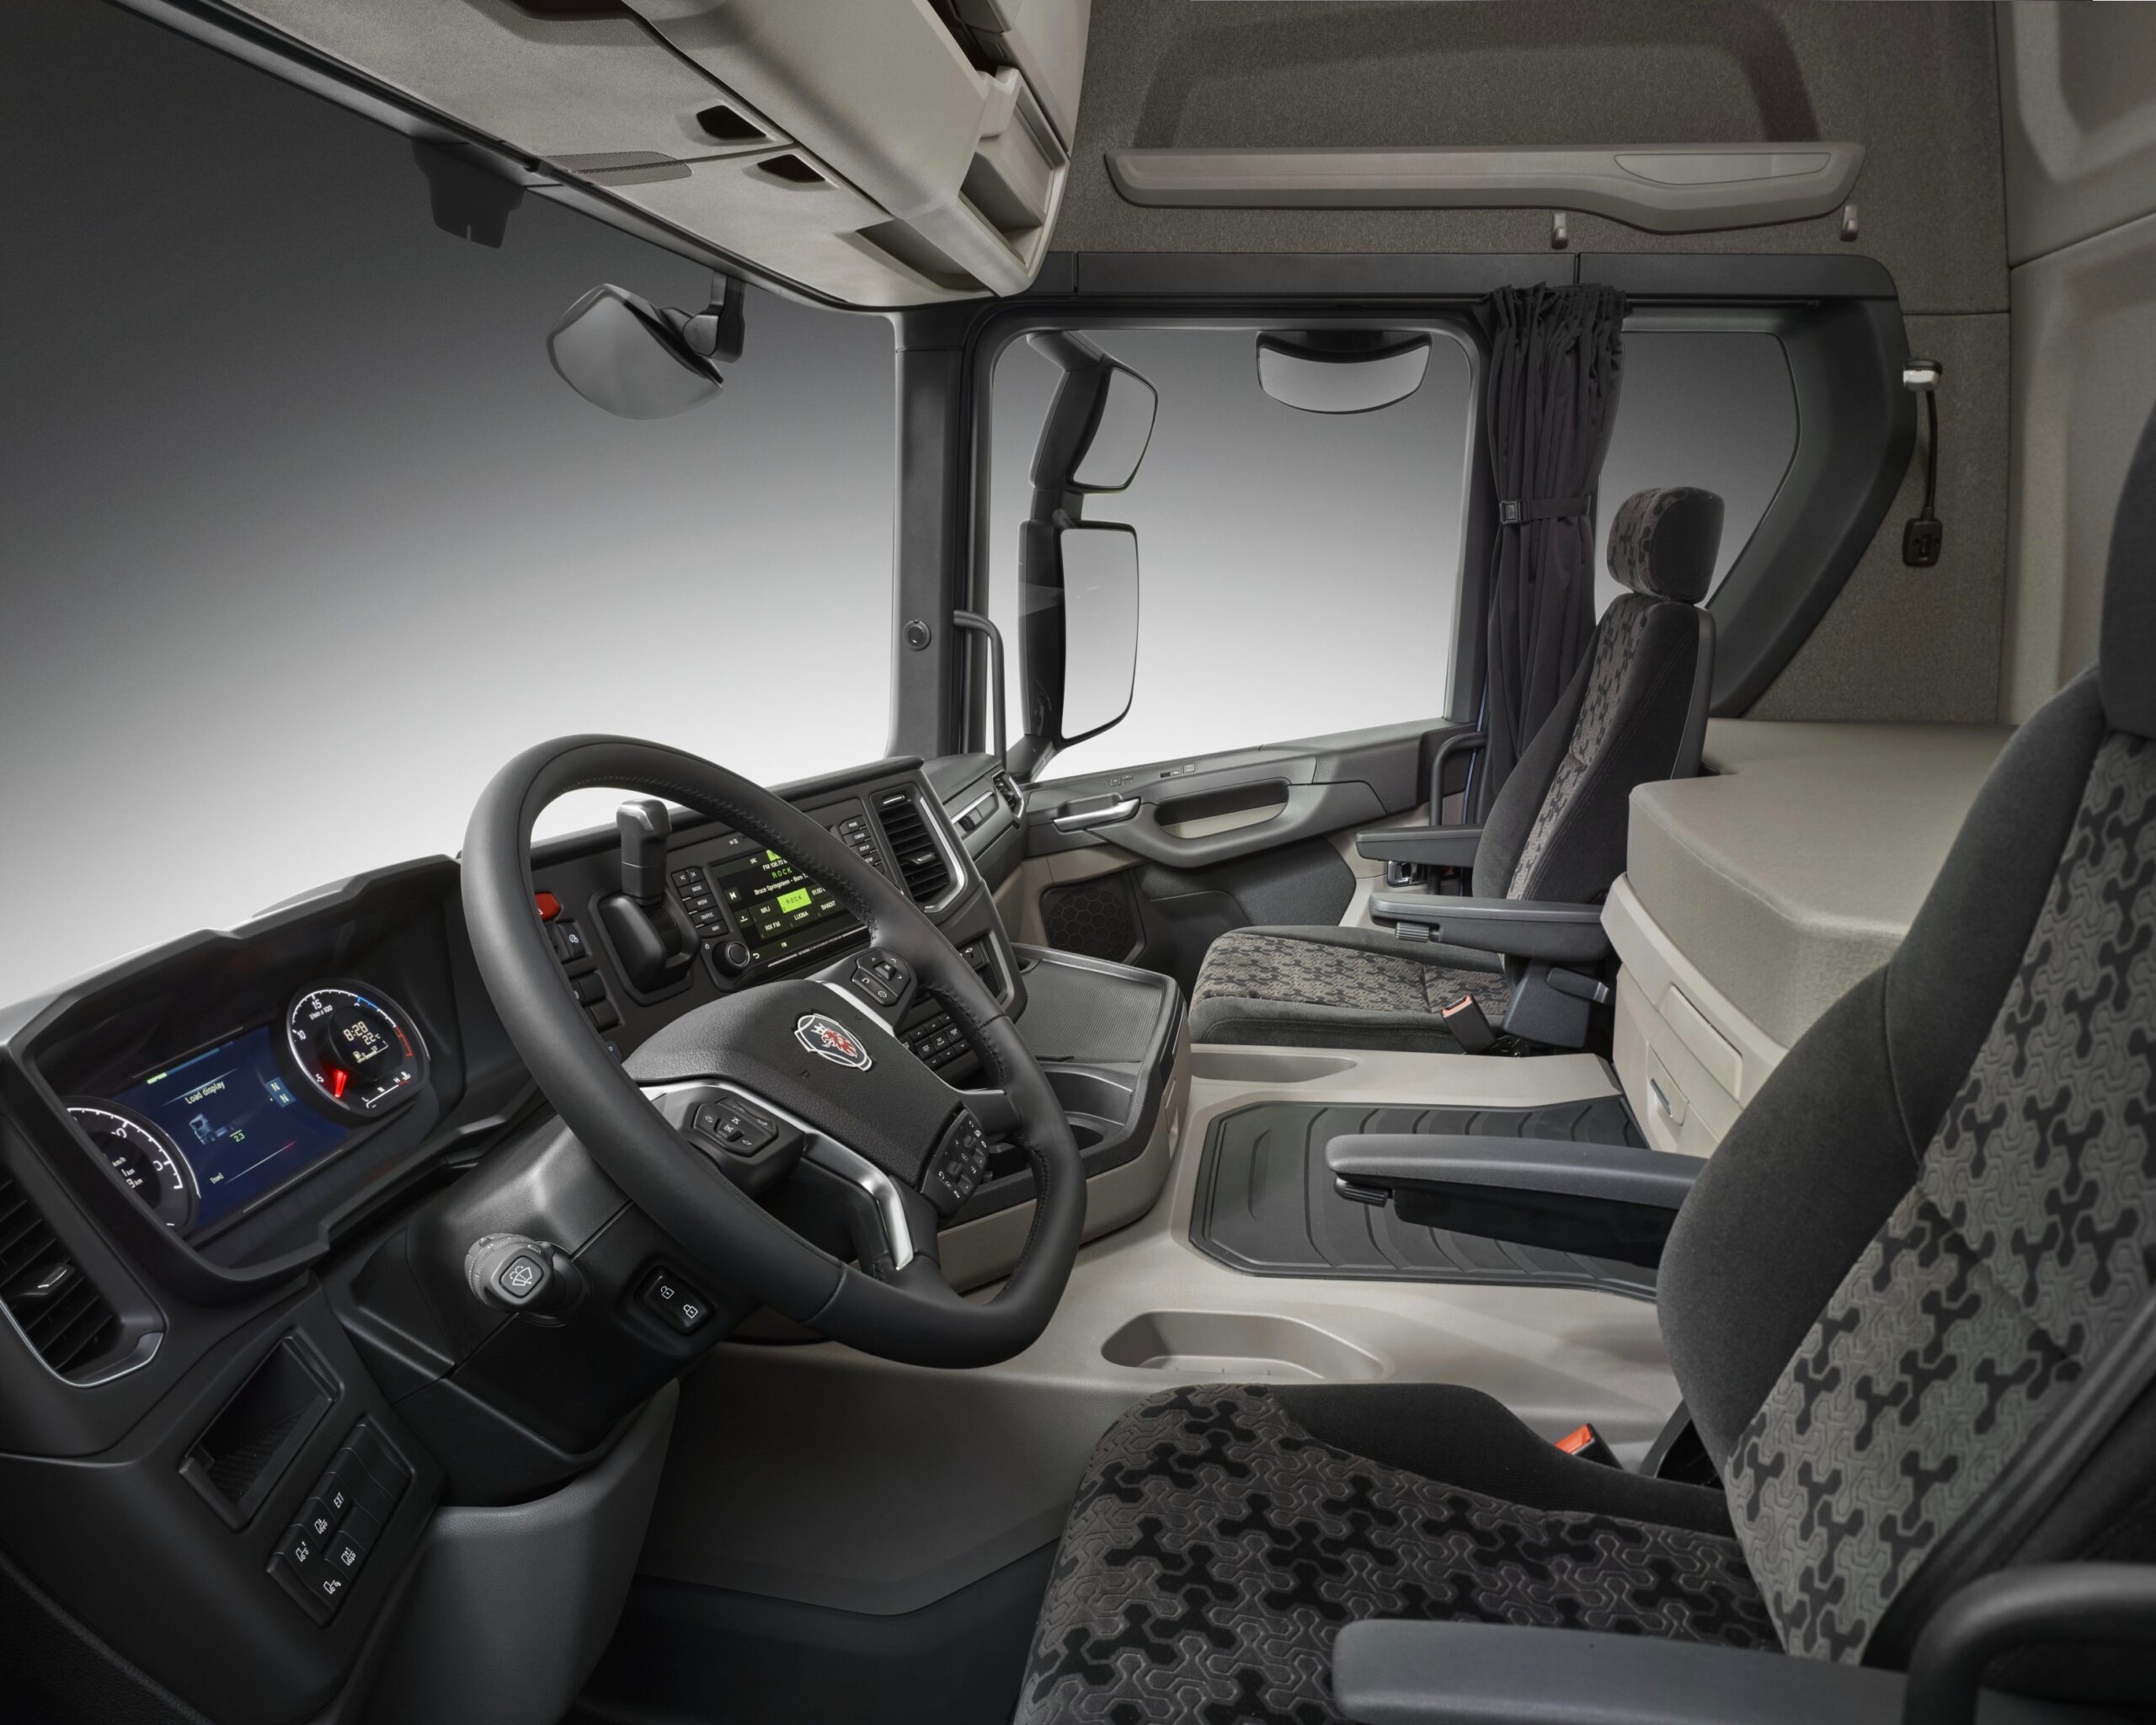 Scania presenta la nuova generazione di cabine serie G con zona notte